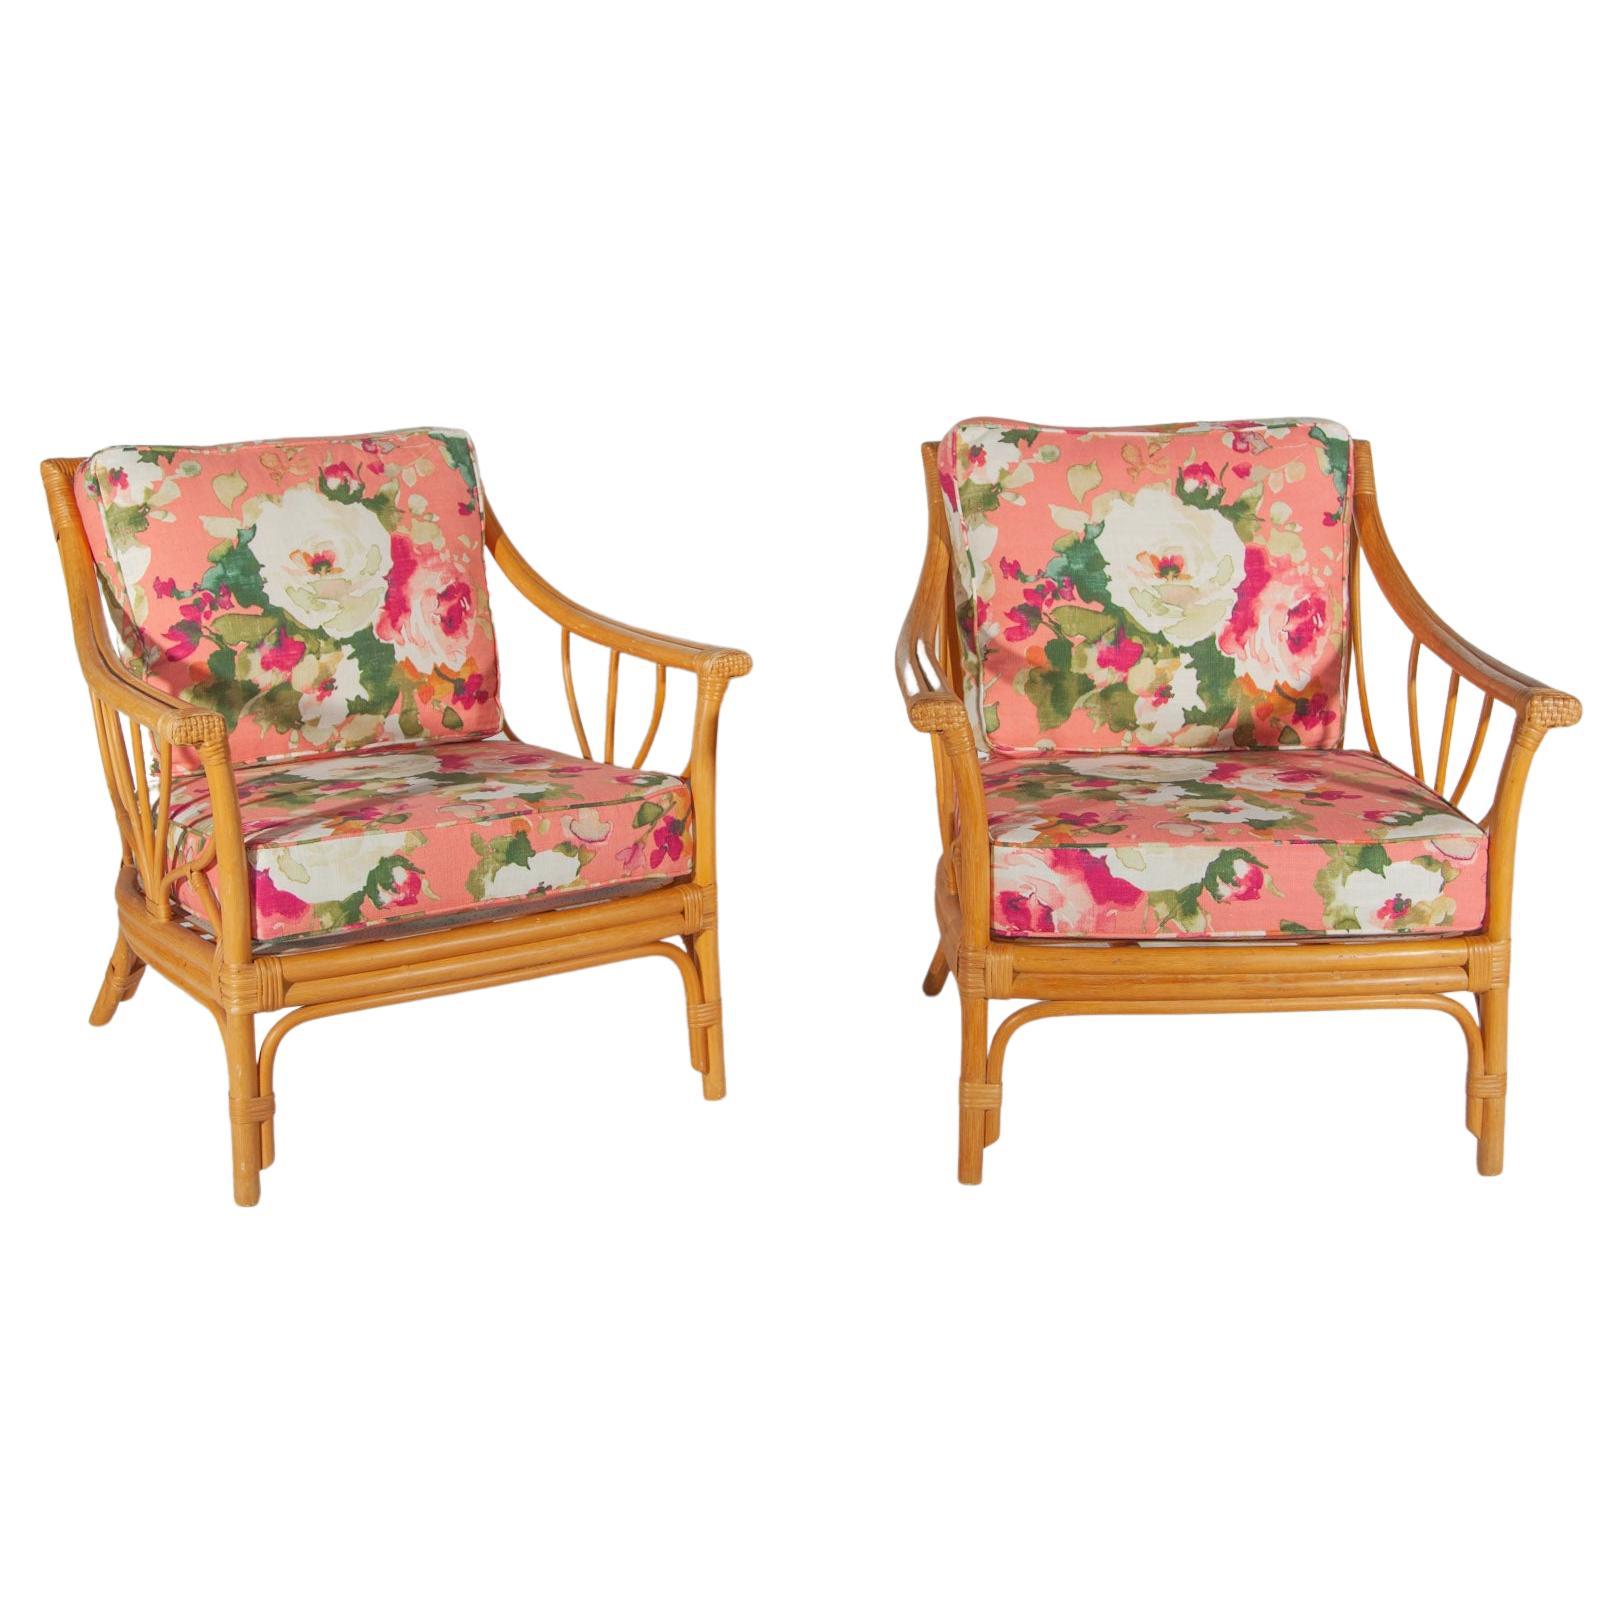 Ensemble de deux chaises longues très élégantes en bambou de qualité vintage conçues en Italie dans les années 1960. Les chaises de salon ont des coussins rembourrés renouvelés dans un tissu d'extérieur floral aux couleurs douces. 
L'ensemble peut